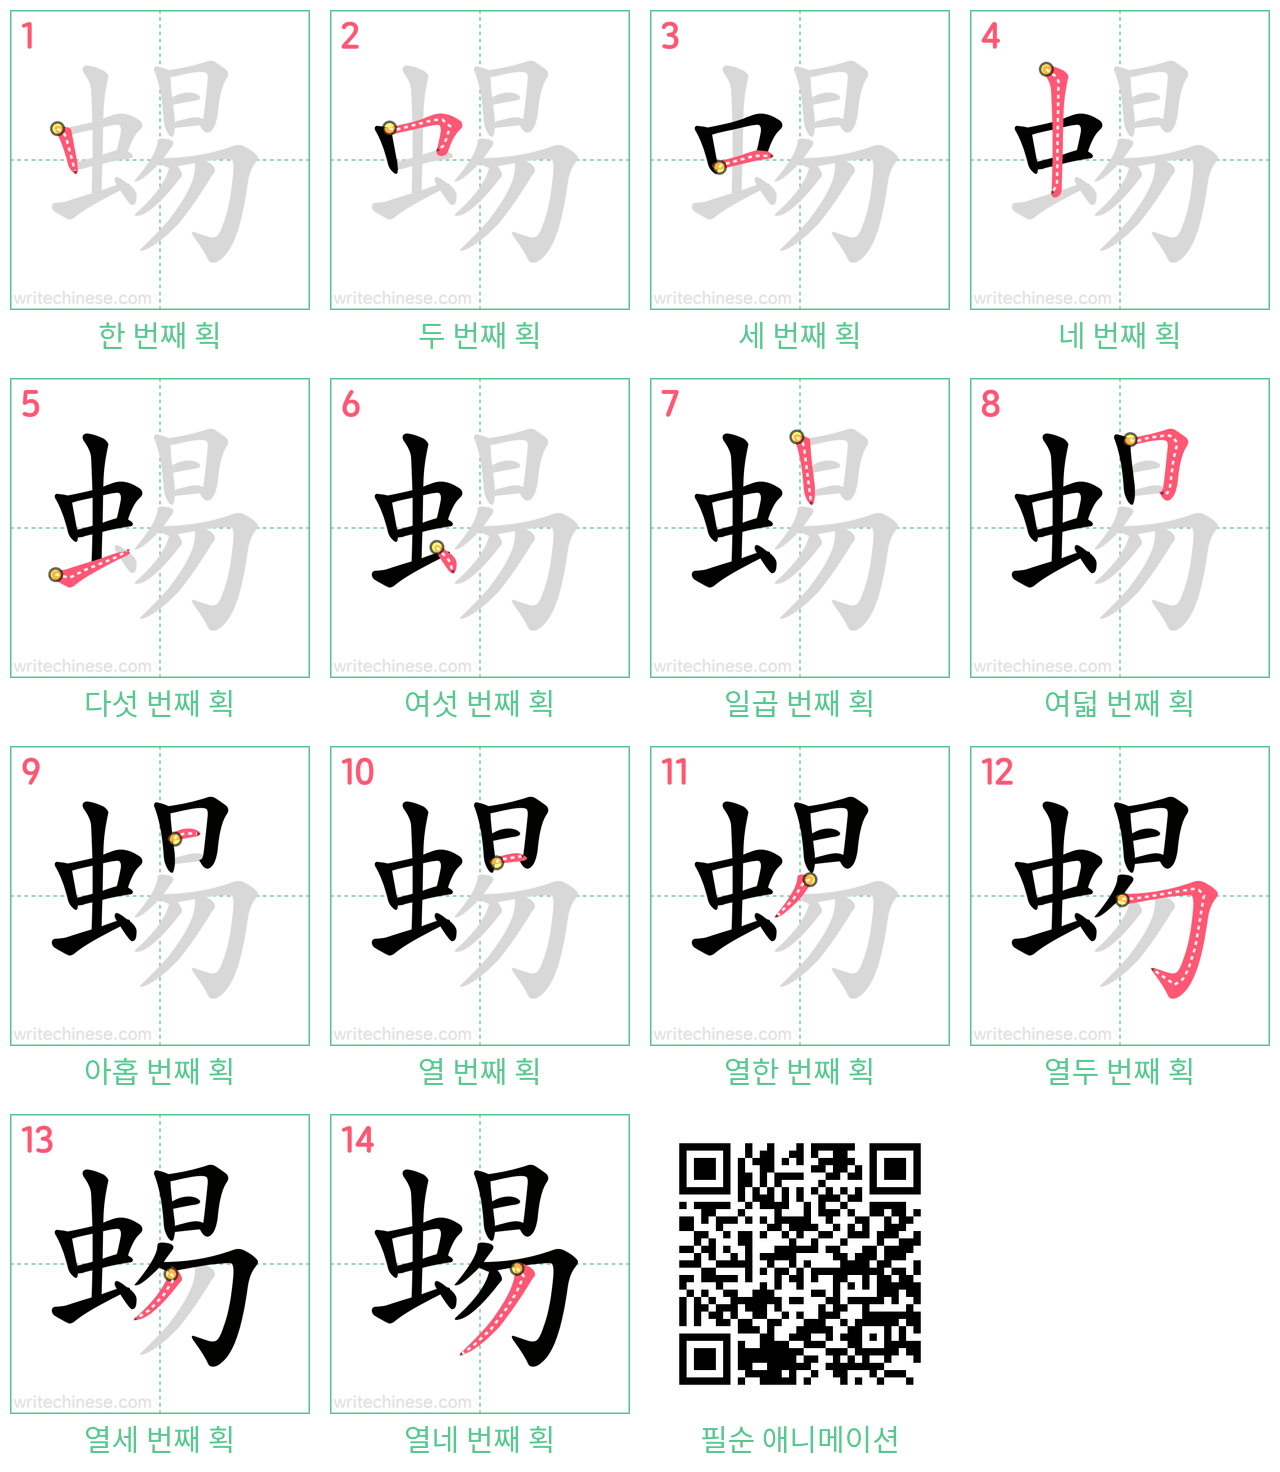 蜴 step-by-step stroke order diagrams